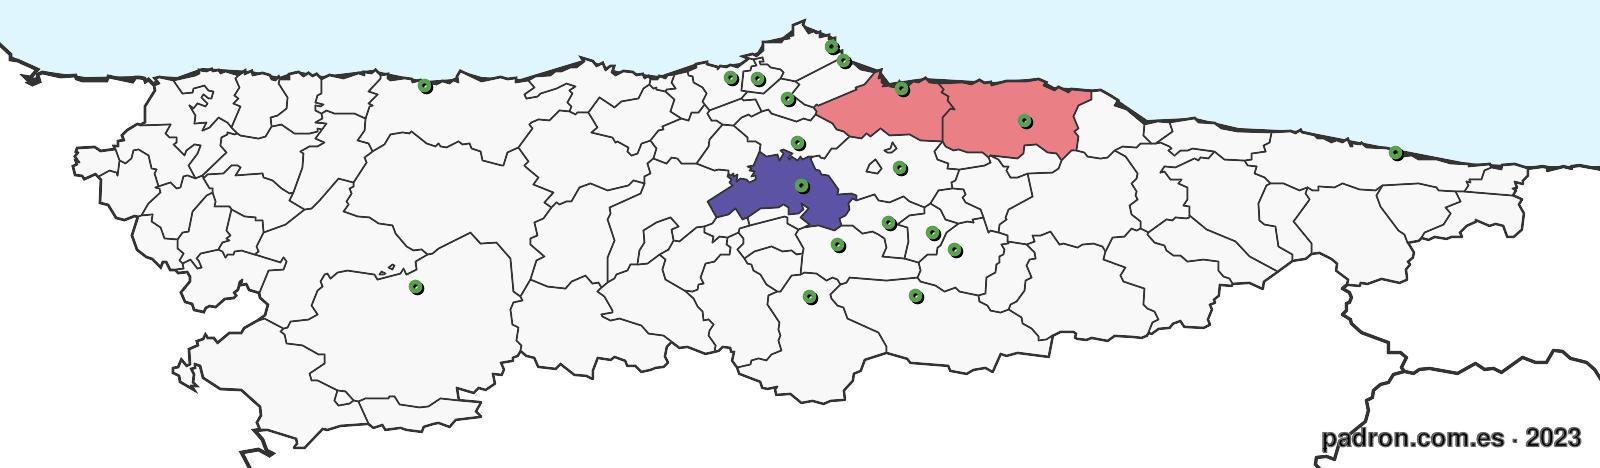 tanzanos en asturias.